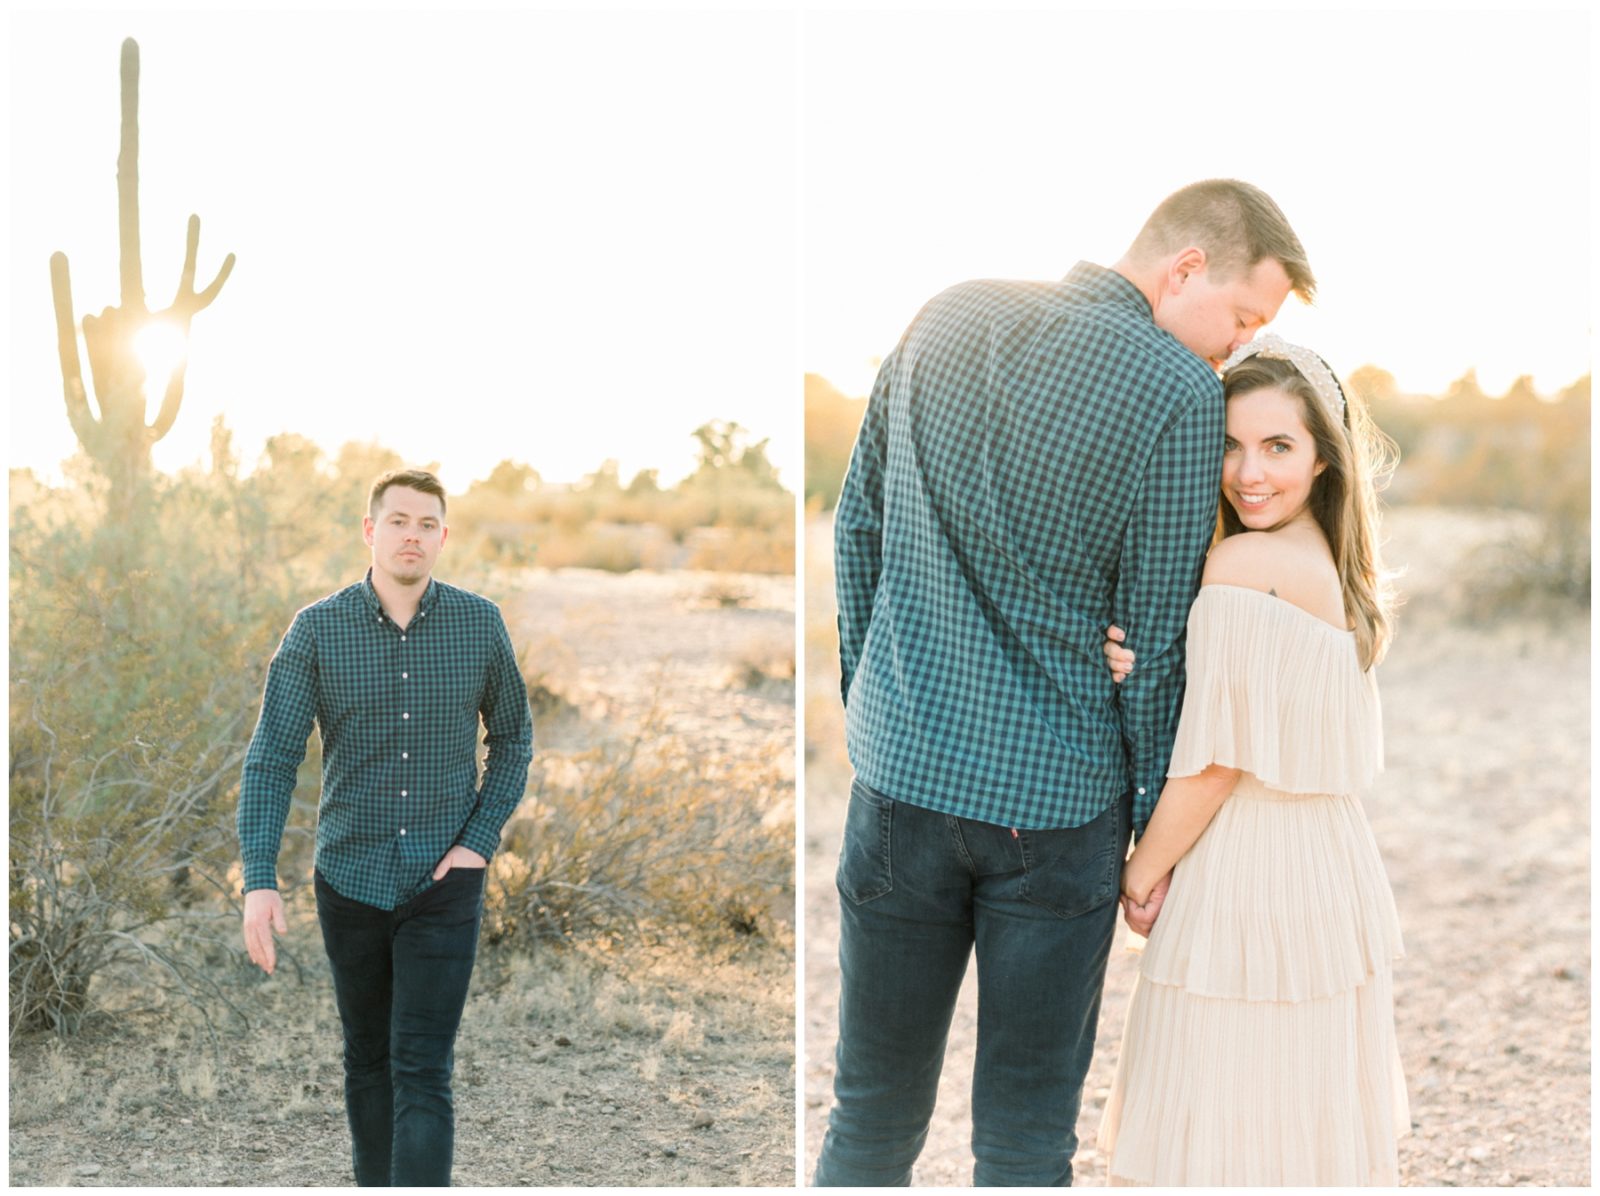 Sunset Desert photo session with stylish couple